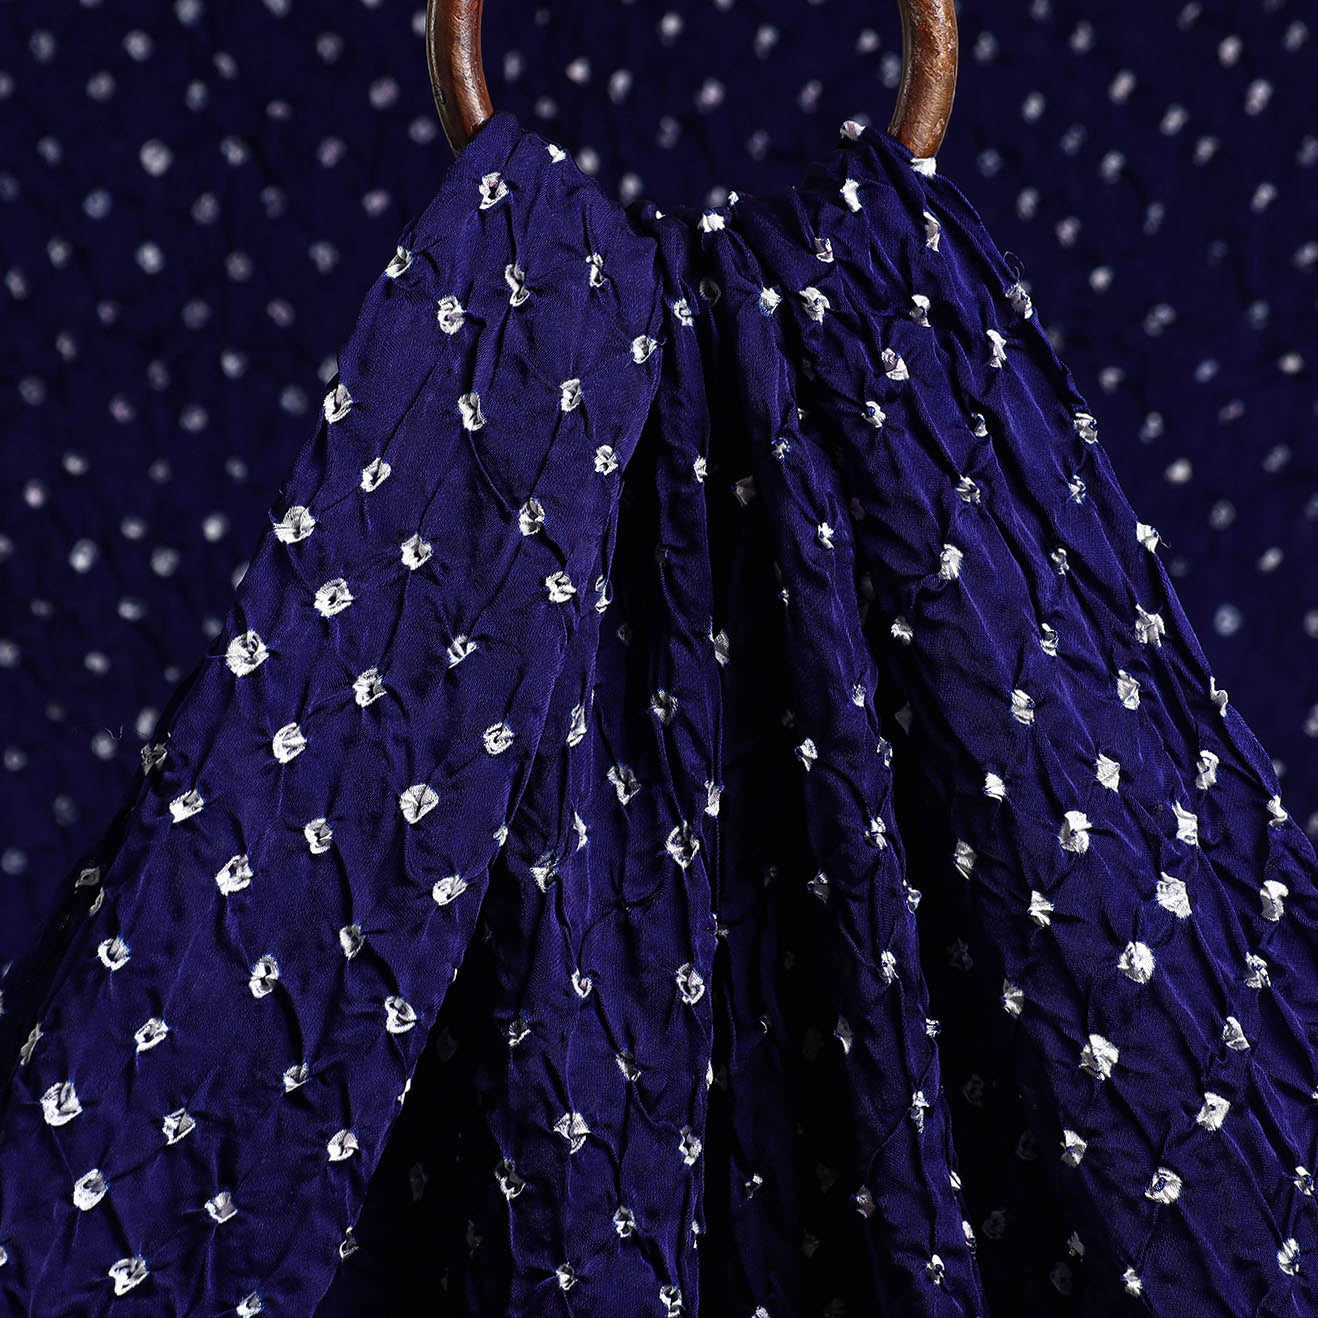 Blue Bonnet Kutch Bandhani Tie-Dye Modal Silk Fabric